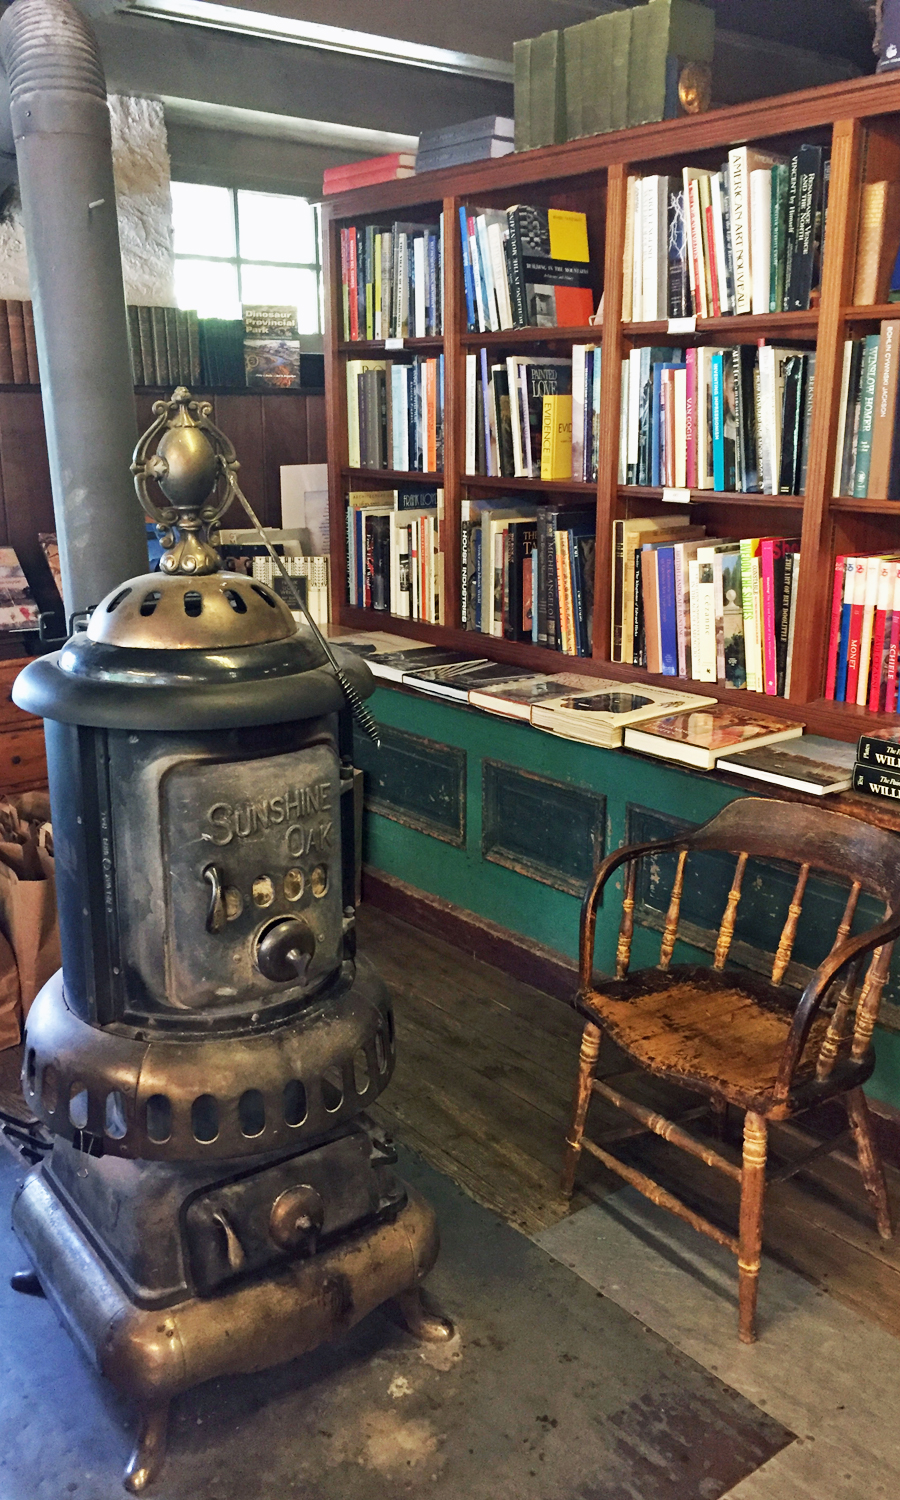 Old wood burning stove at Baldwin's Book Barn.